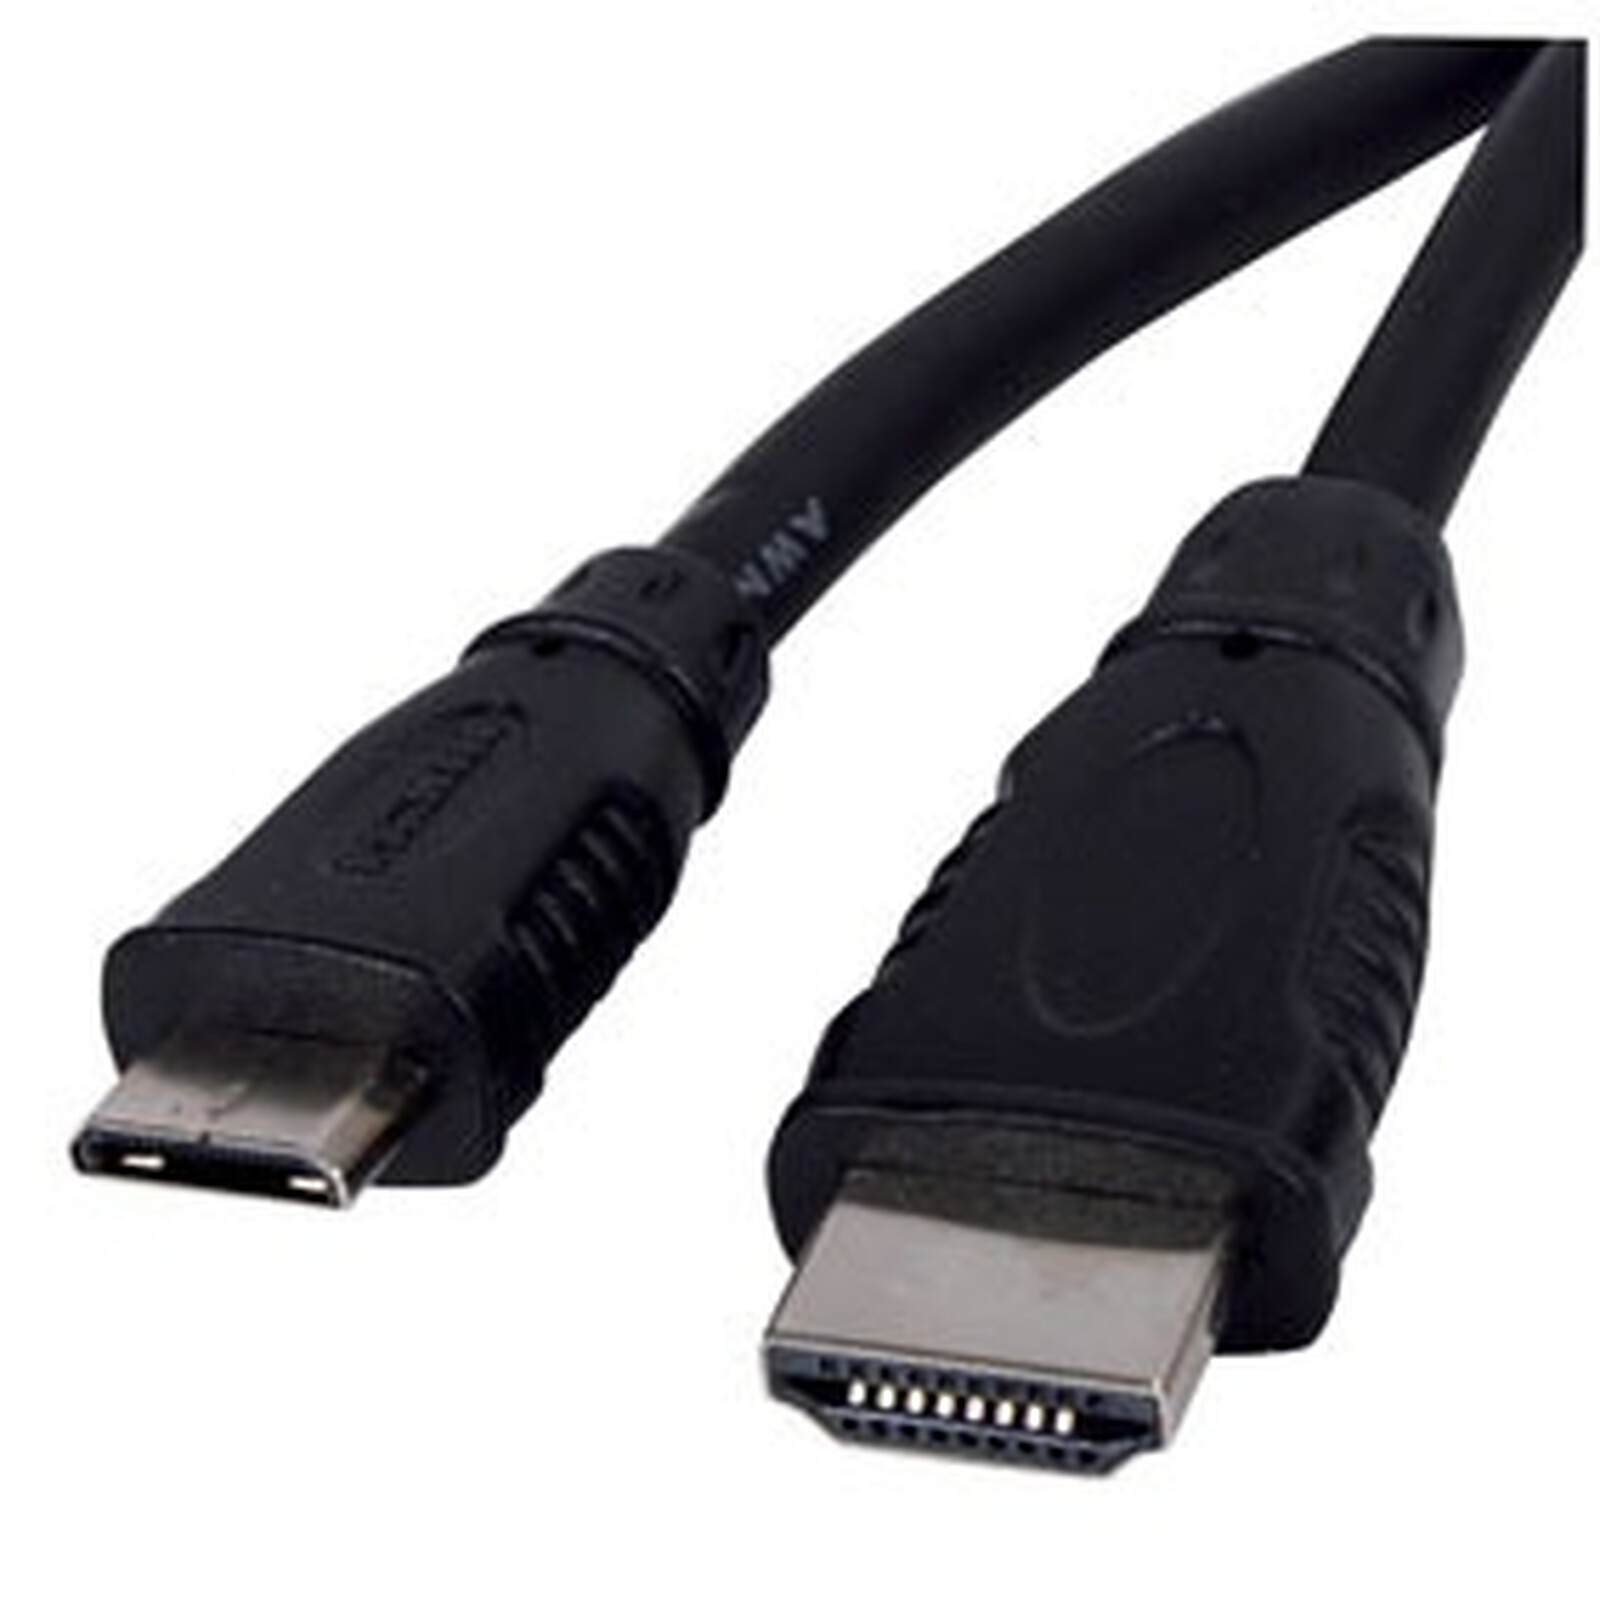 Cable HDMI macho / mini HDMI macho - (1 metro) - HDMI Genérica en LDLC